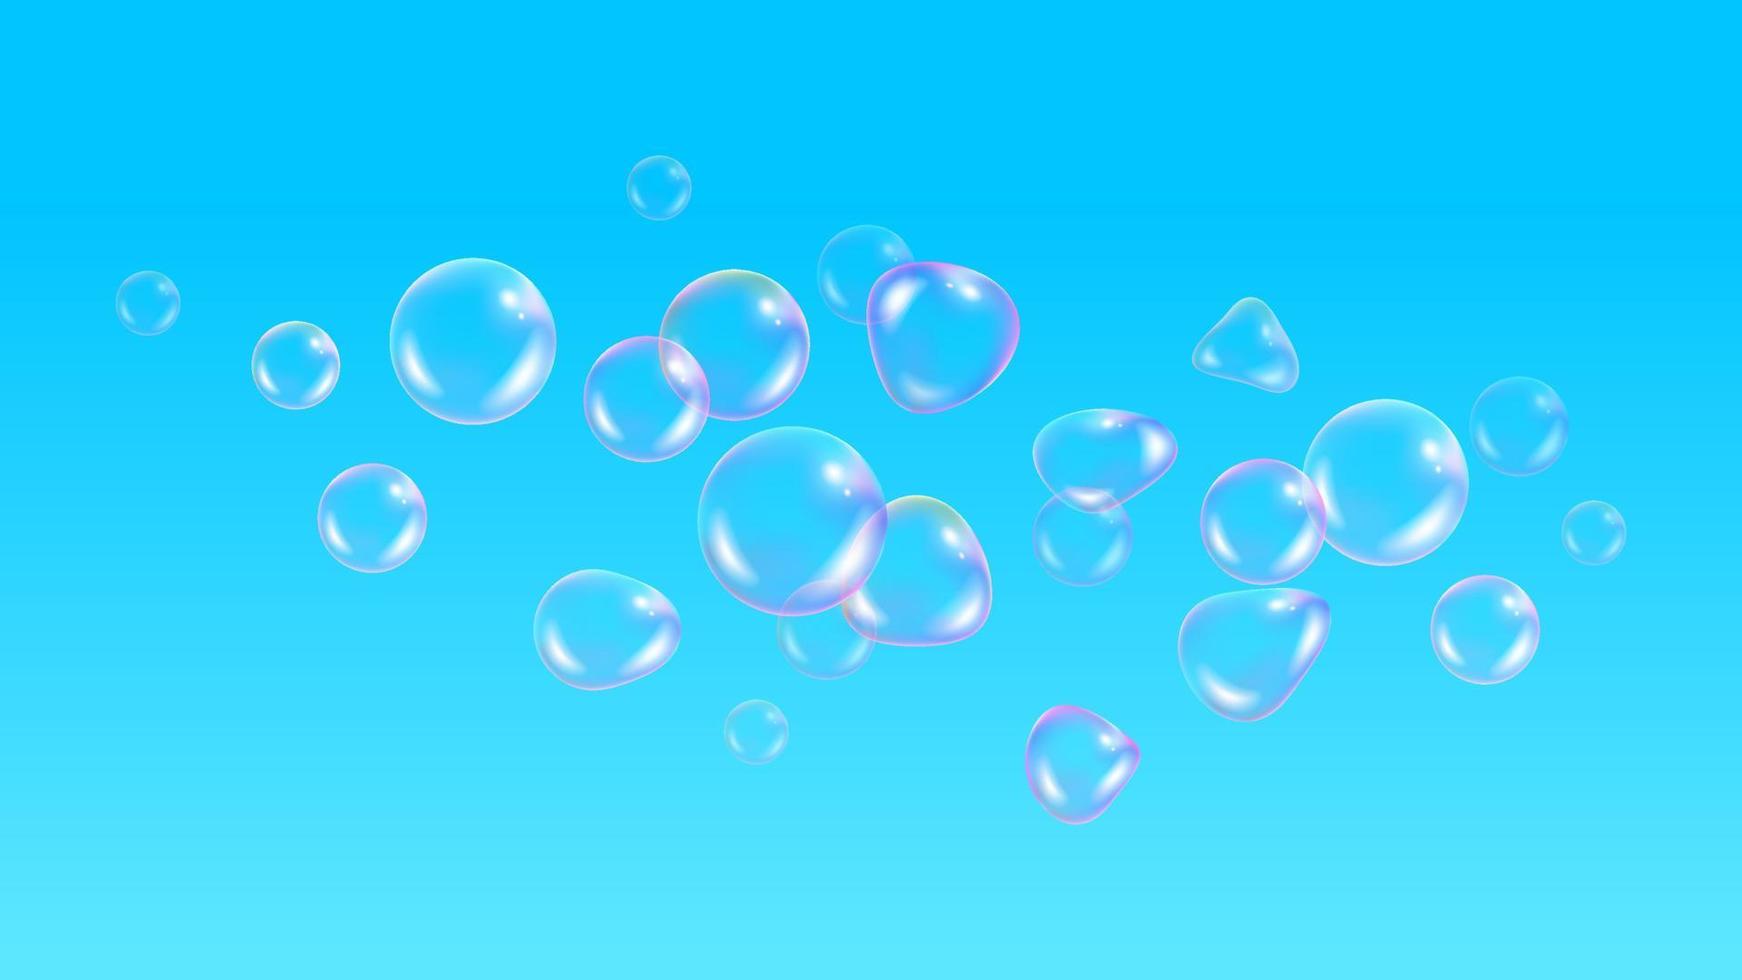 sfondo per bambini, con carta da parati palloncini. bolle di sapone realistiche con riflesso arcobaleno su sfondo blu cielo. bolle di schiuma d'acqua vettoriale. sfera di vetro arcobaleno colorato. vettore